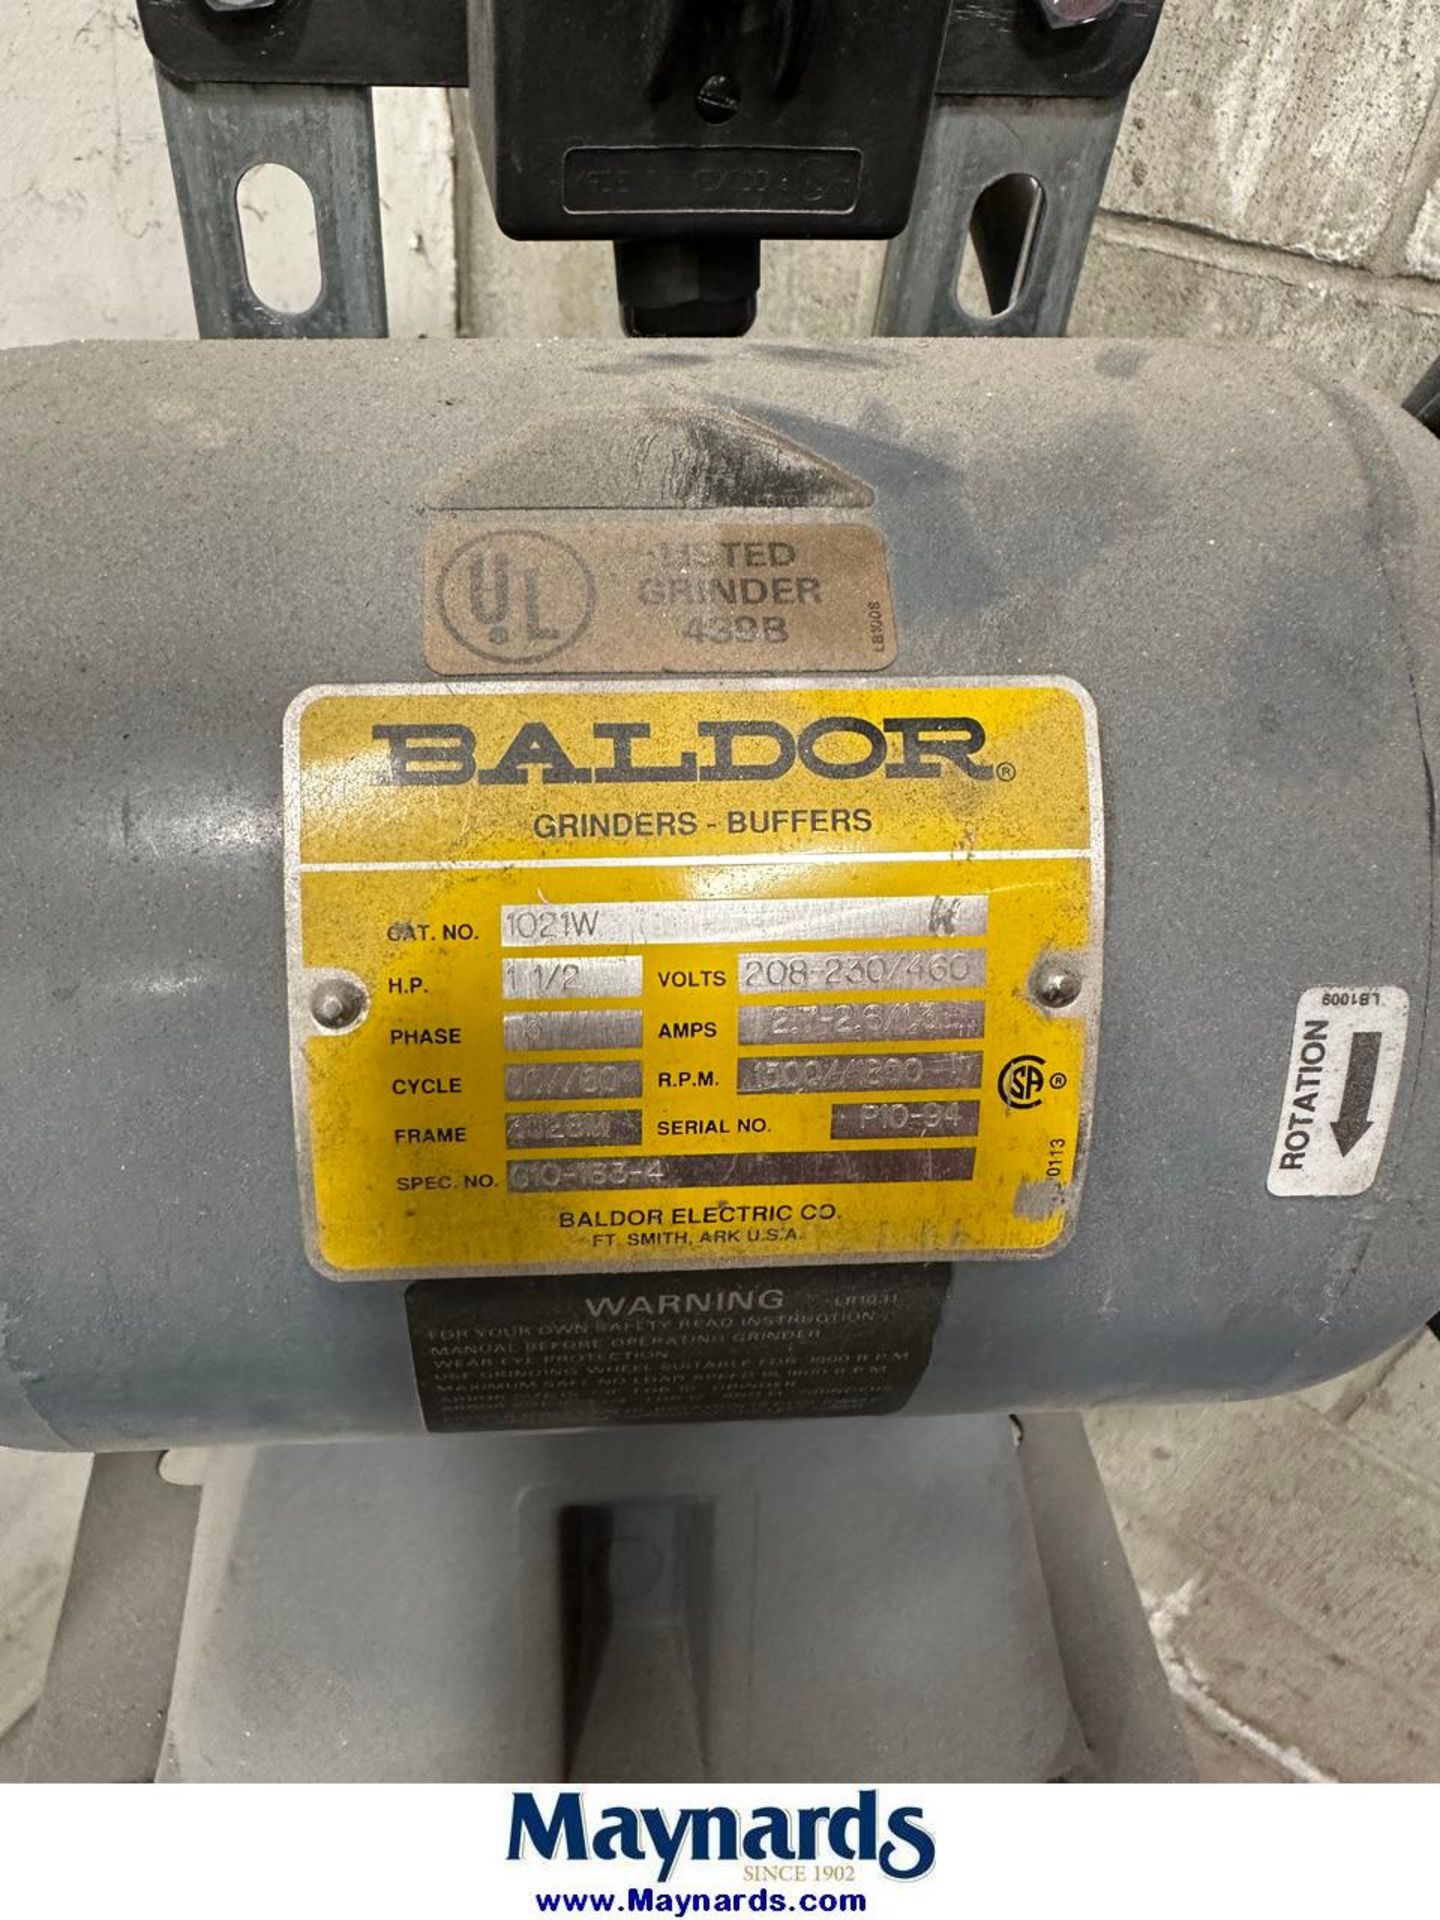 Baldor 1 1//2 hp bench grinder - Image 2 of 2